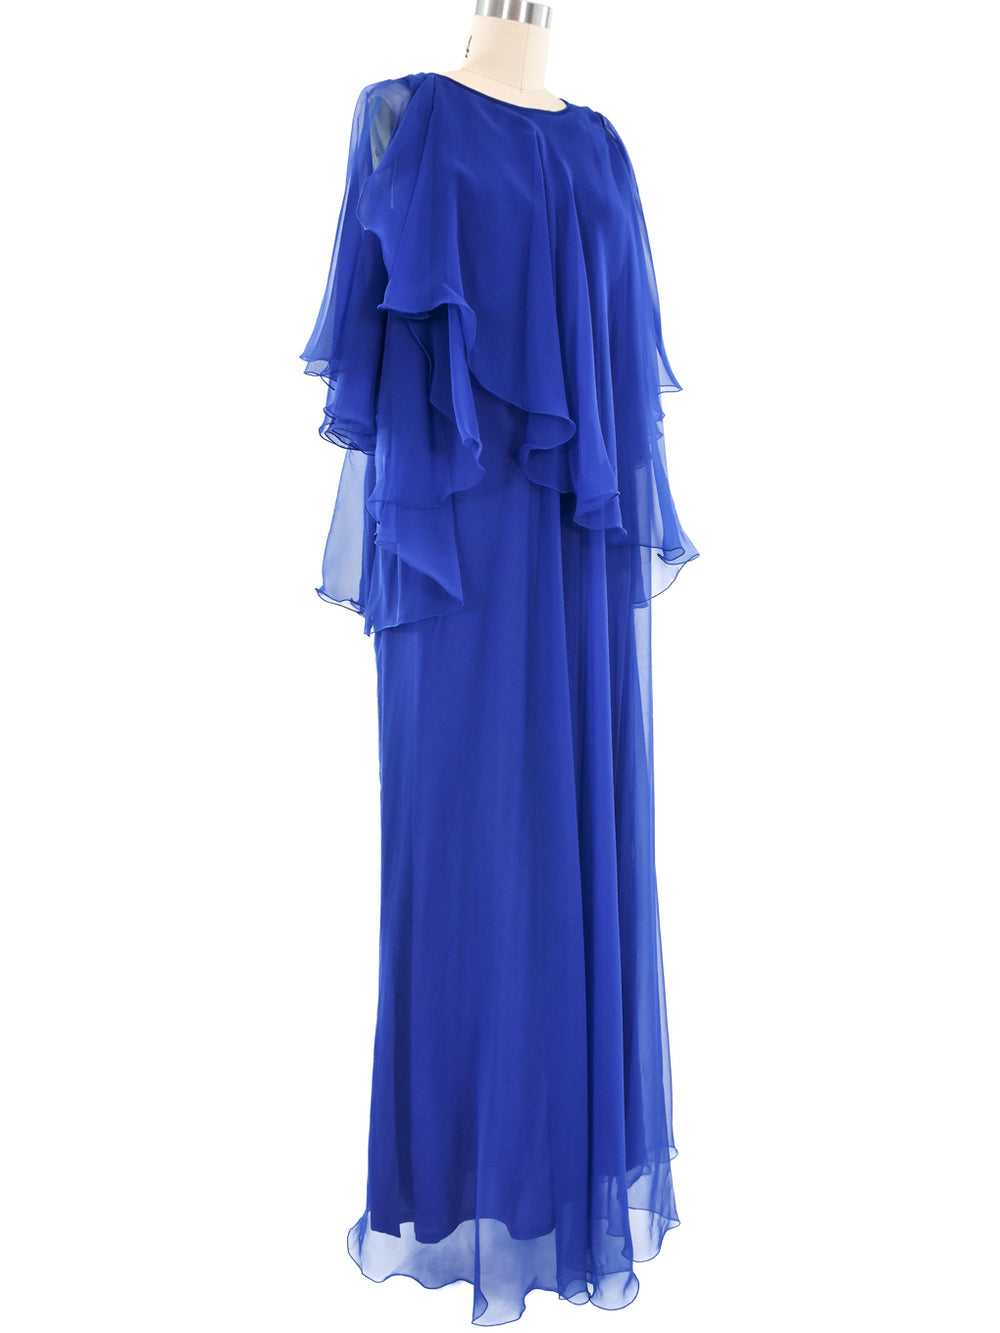 Jean Varon Ruffled Maxi Dress - image 3